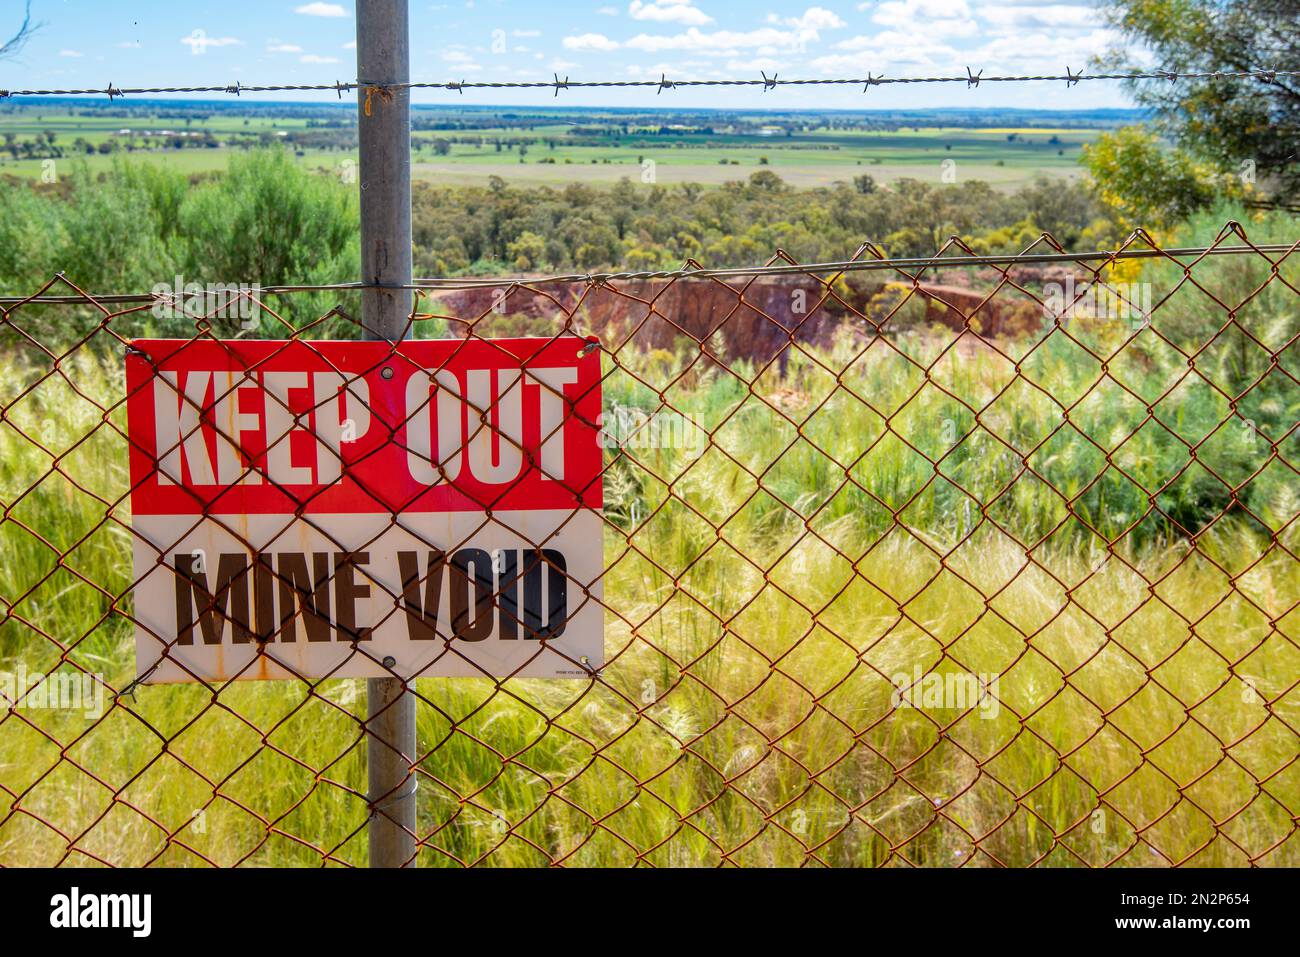 Ein Zaun- und Versteck-Schild in der Nähe der Goldmine Peak Hill im Westen von New South Wales, Australien, das heute eine Touristenattraktion ist Stockfoto